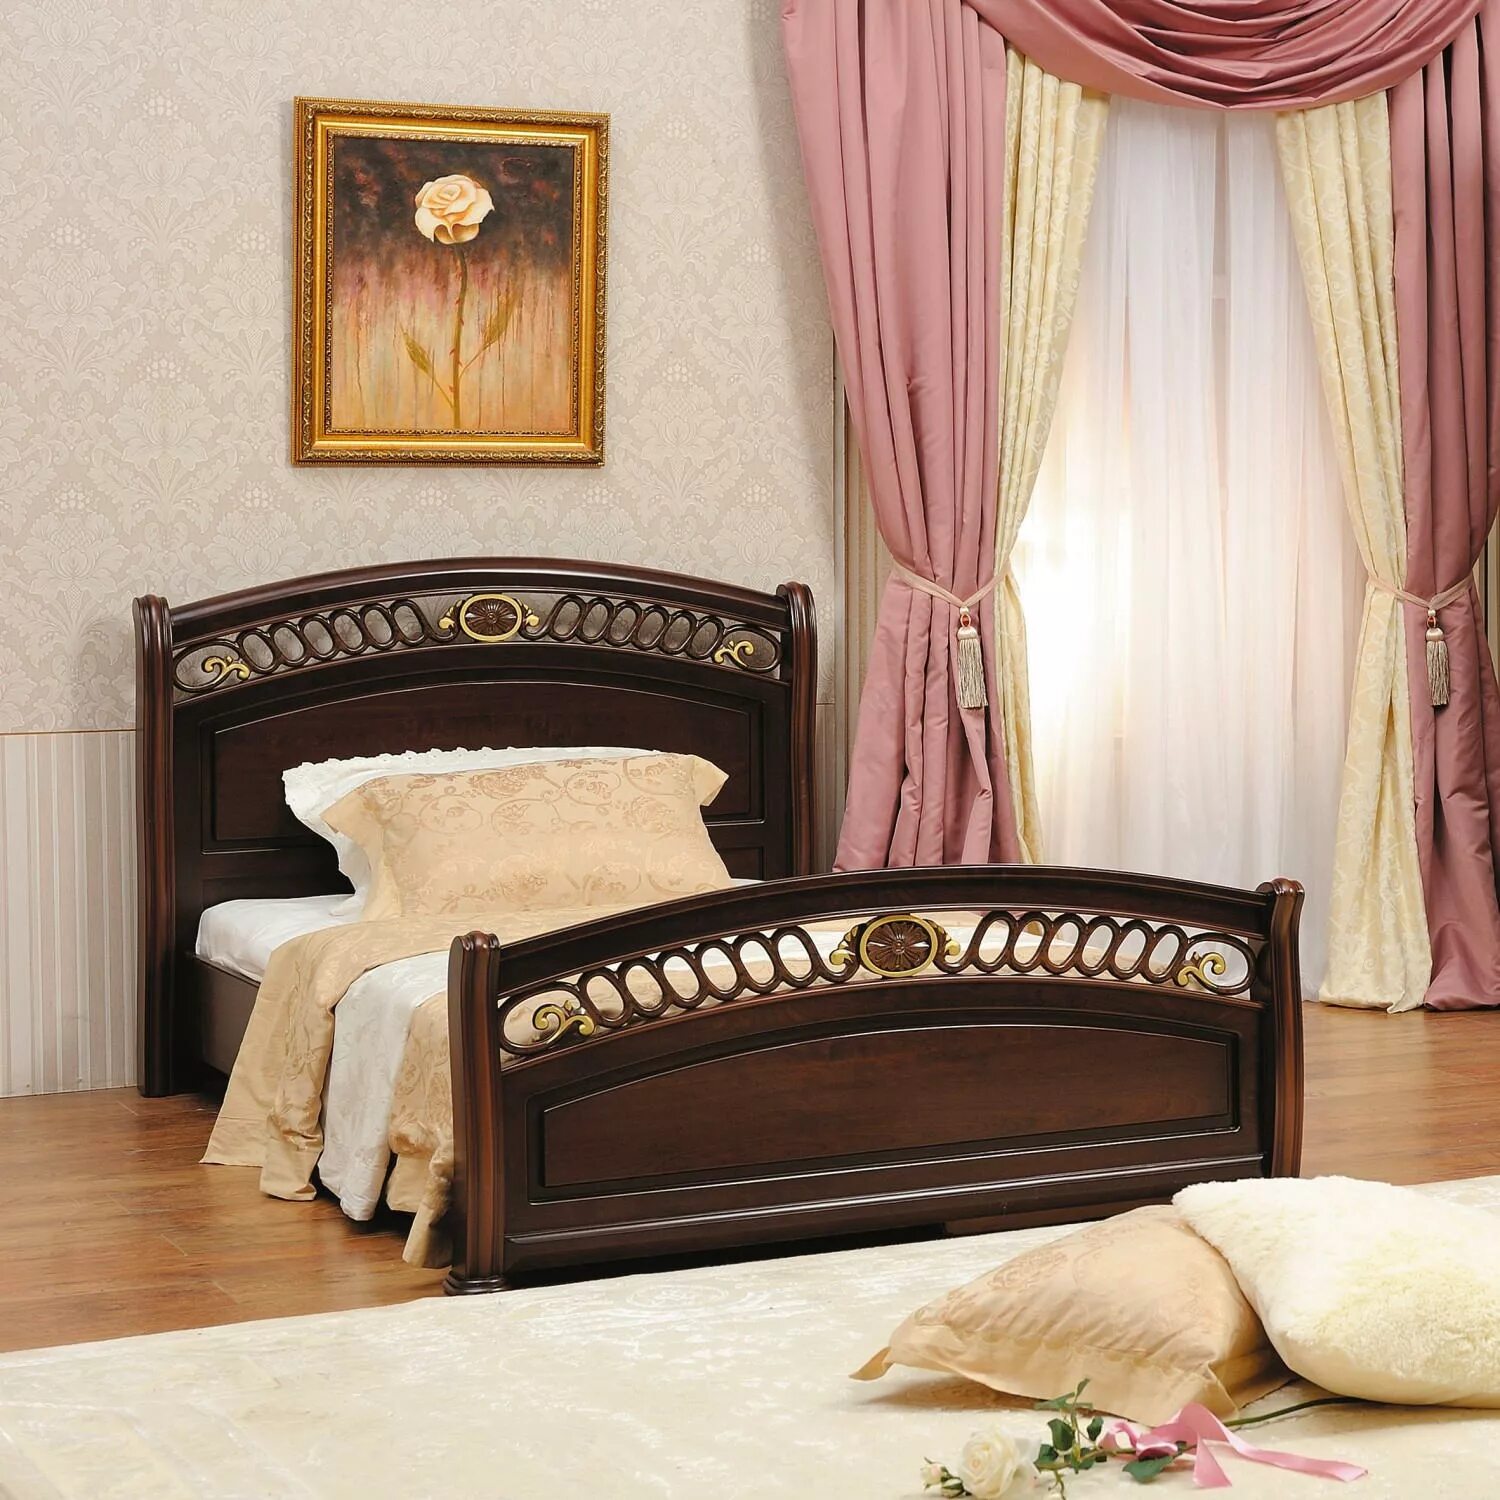 Вивальди кровати. Спальня Vivaldi CHILLEGIO. Кровать Нотти 9901. Кровать Нотти 9901 Вивальди.